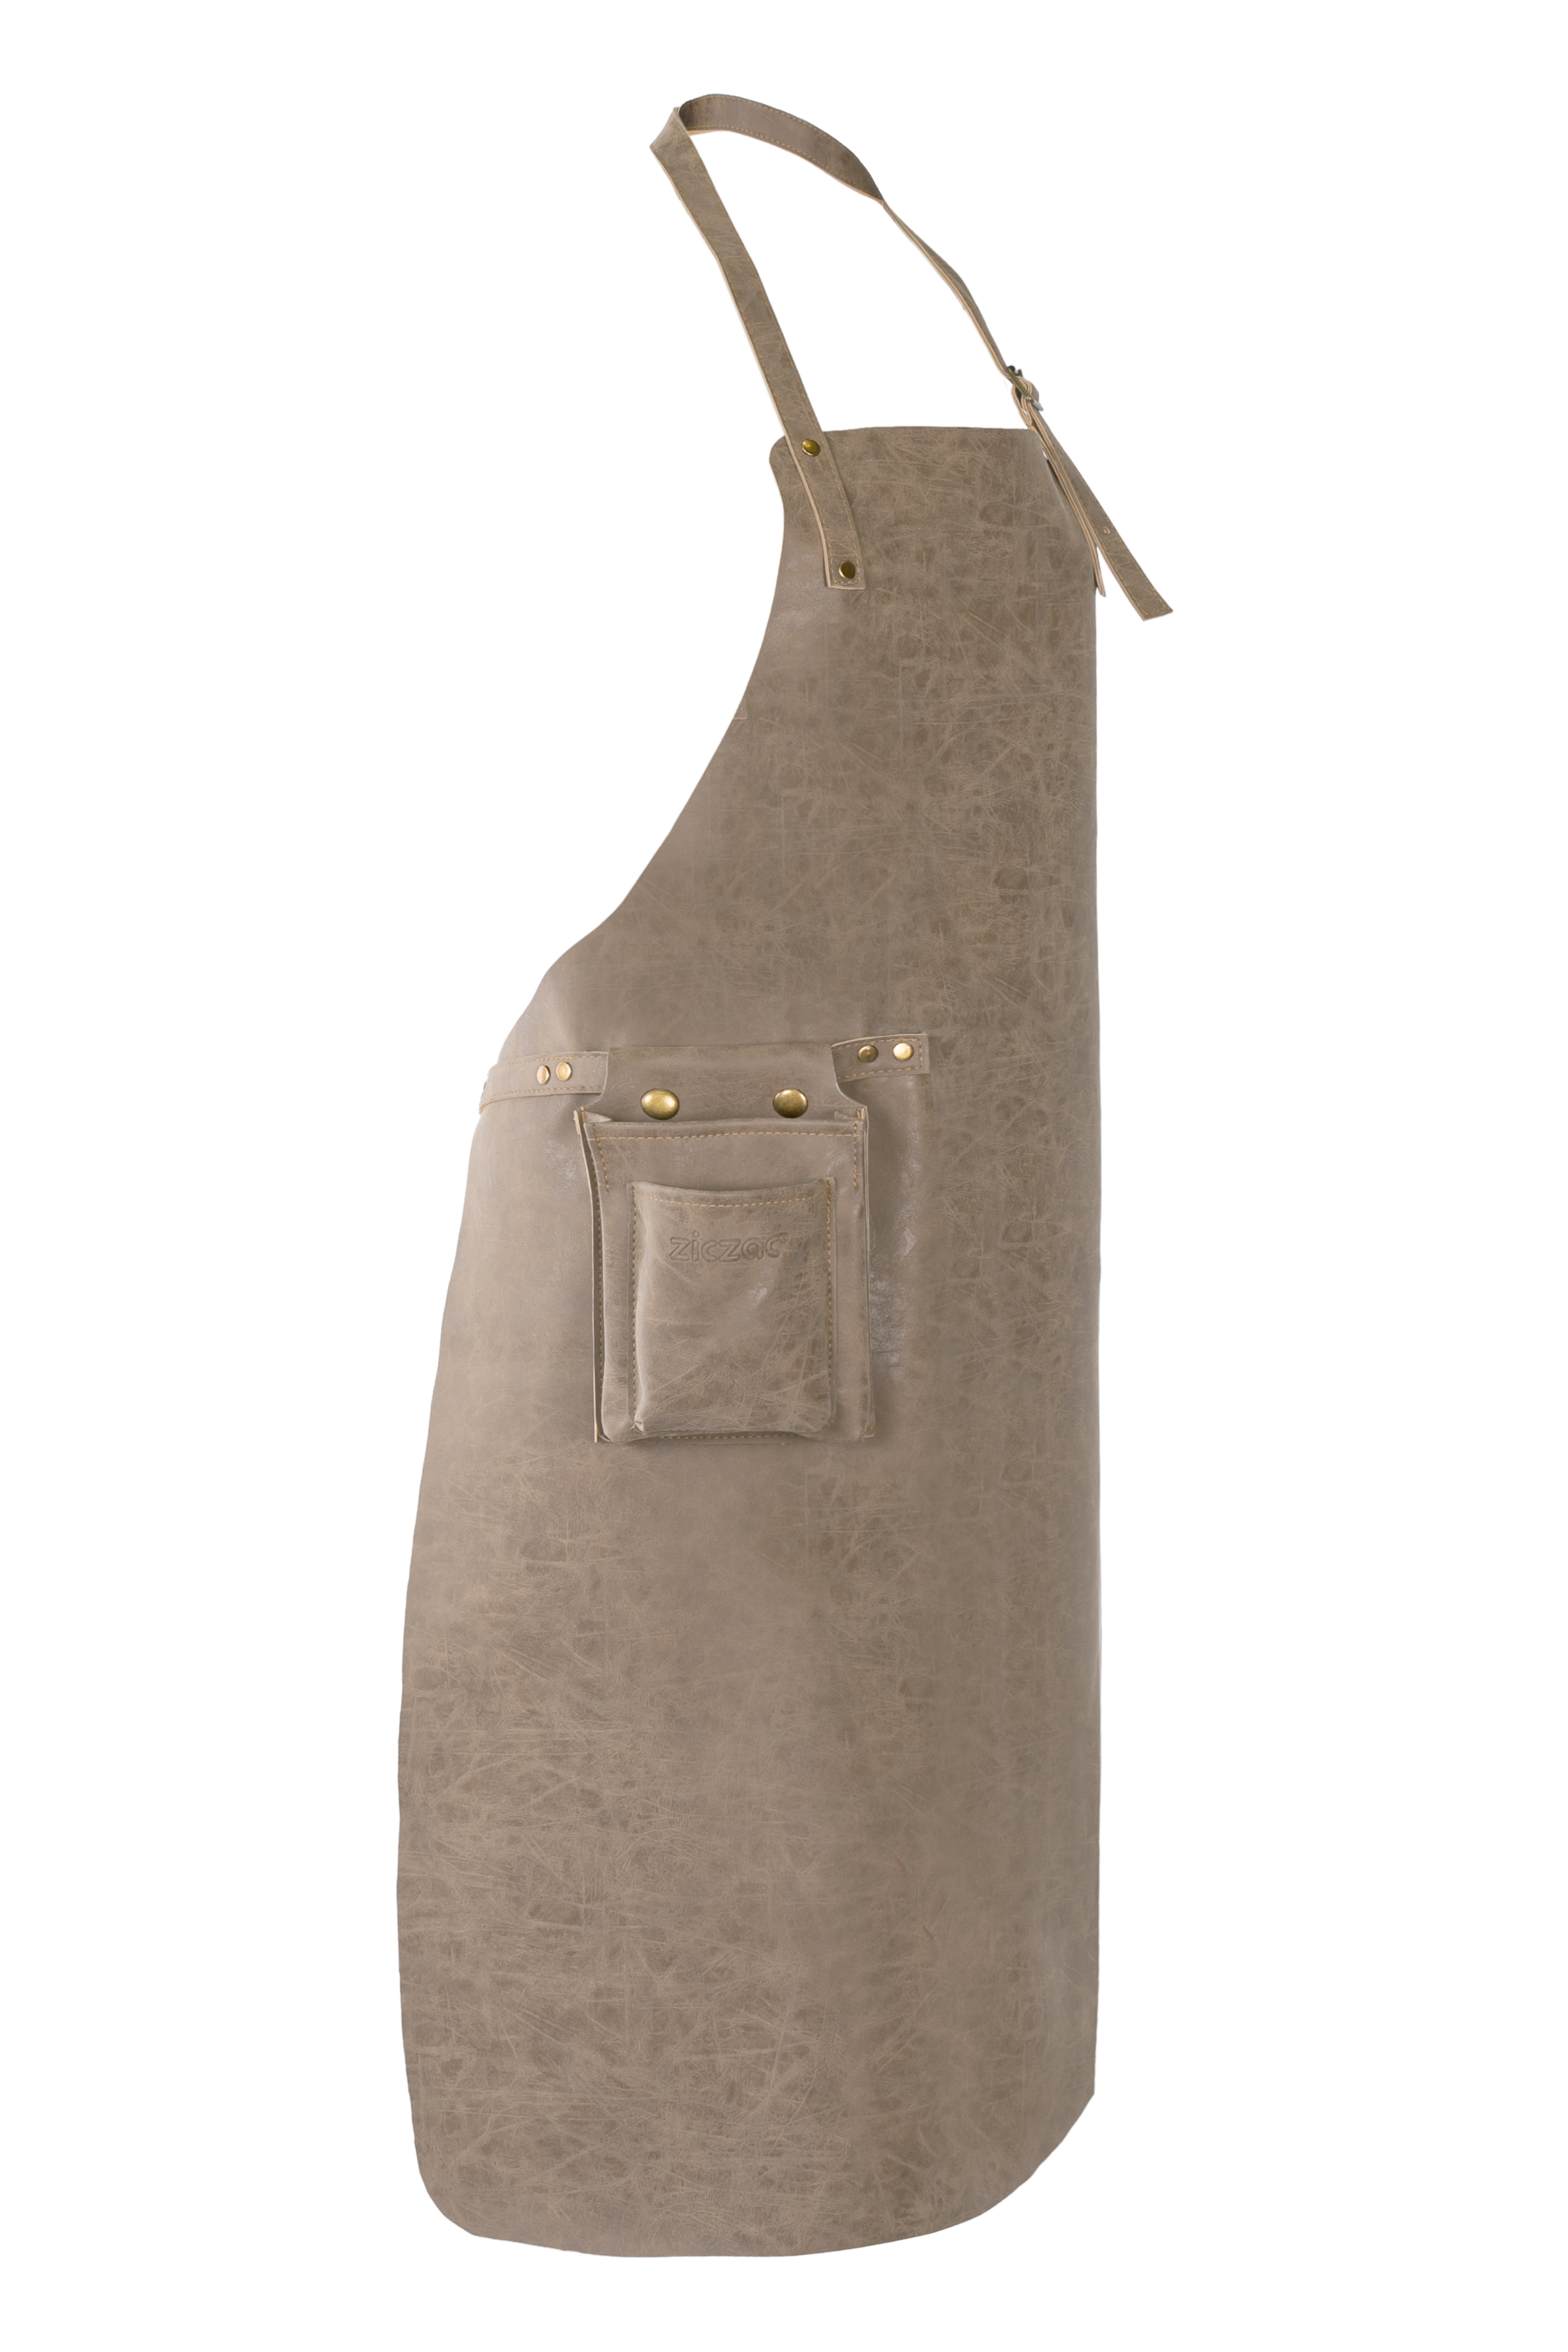 Schort TRUMAN (Towel loop - no pocket - opt. Accessory bag), 70x90 cm, taupe